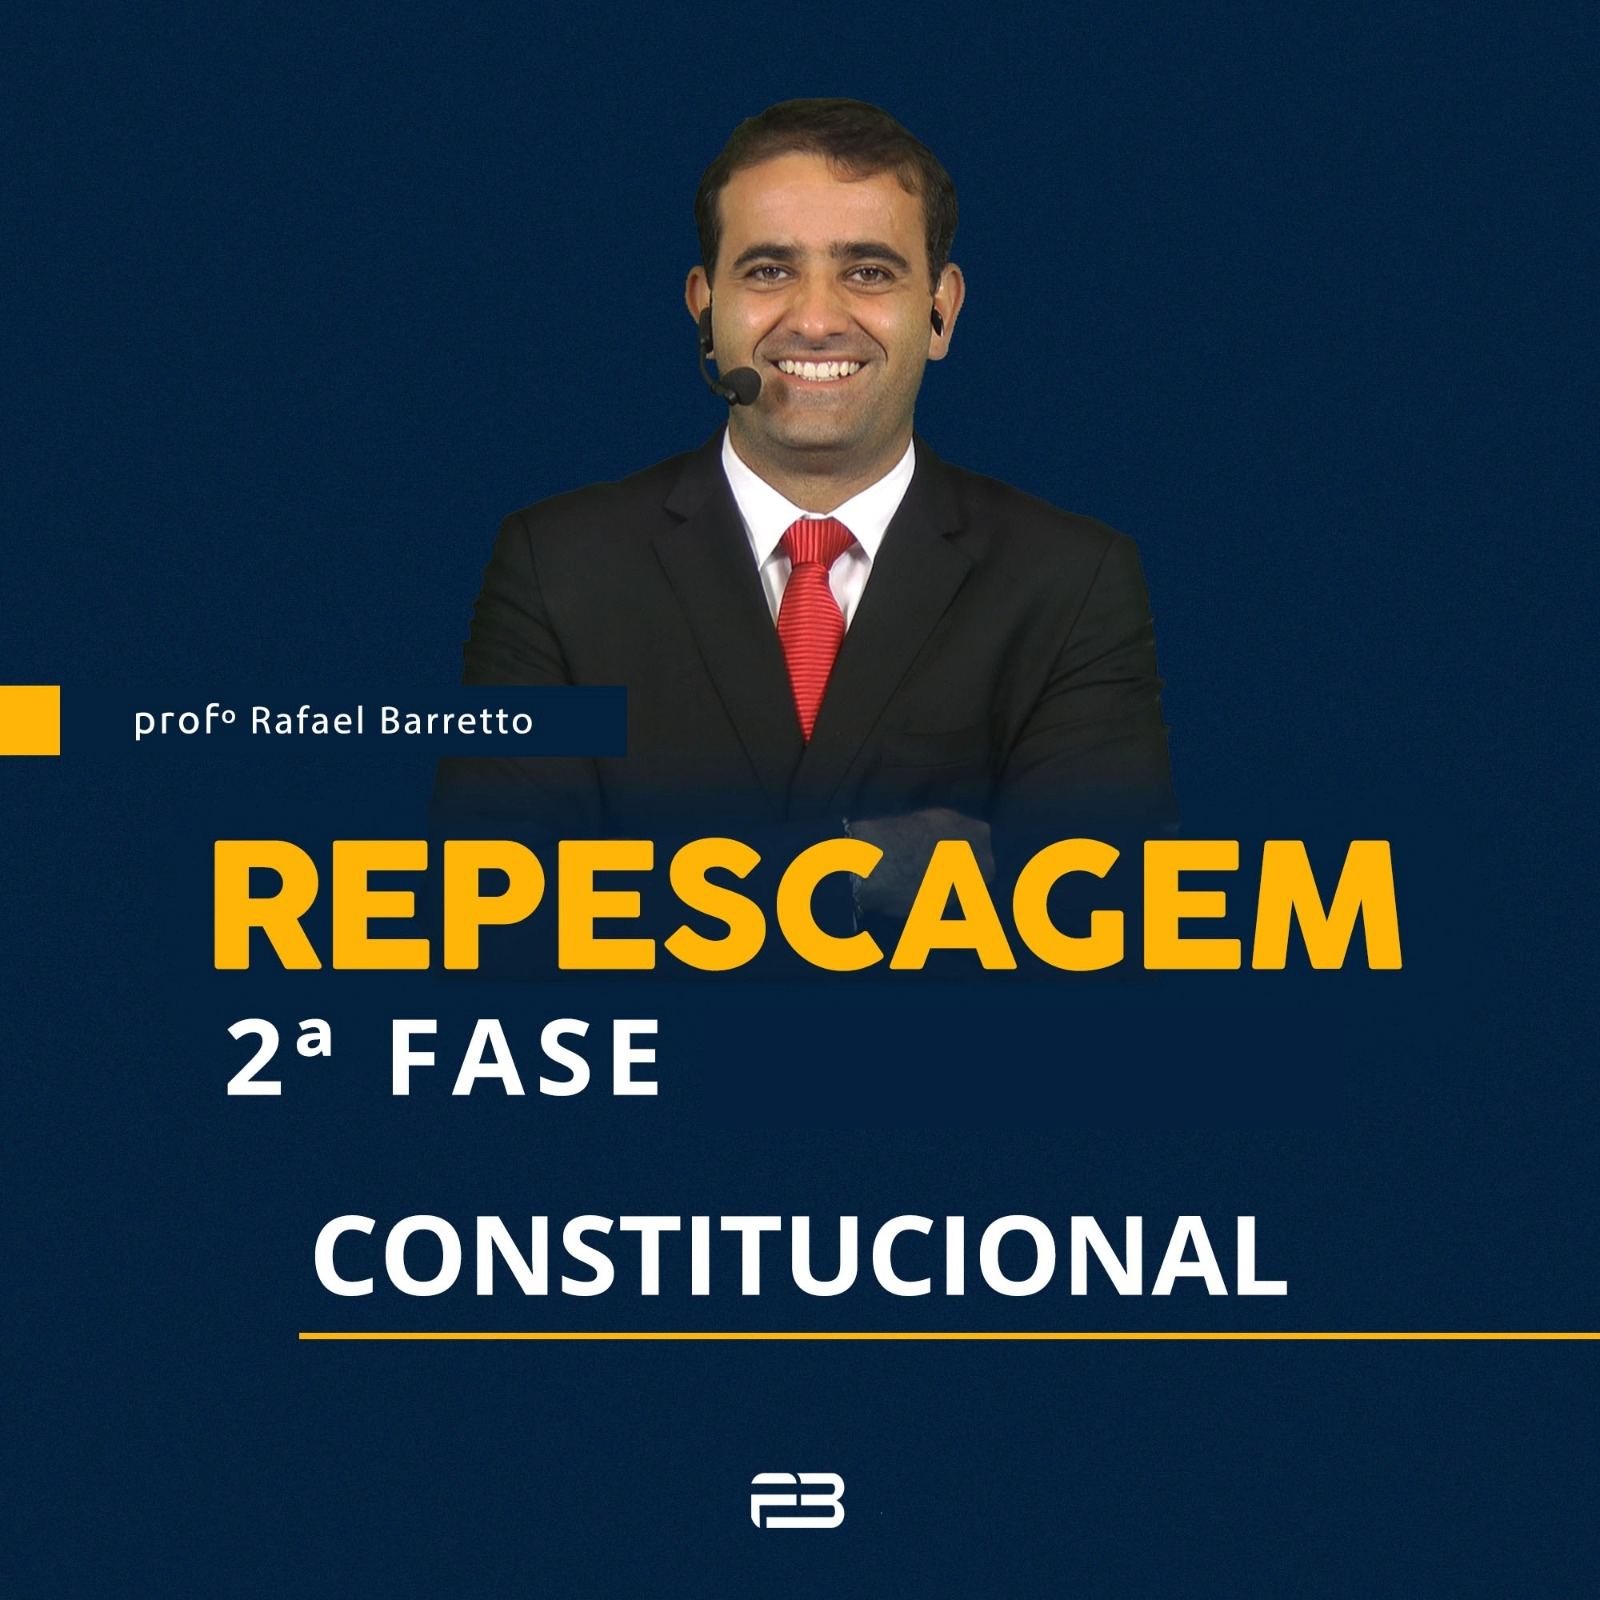 2 FASE REPESCAGEM CONSTITUCIONAL - 40 EXAME ONLINE